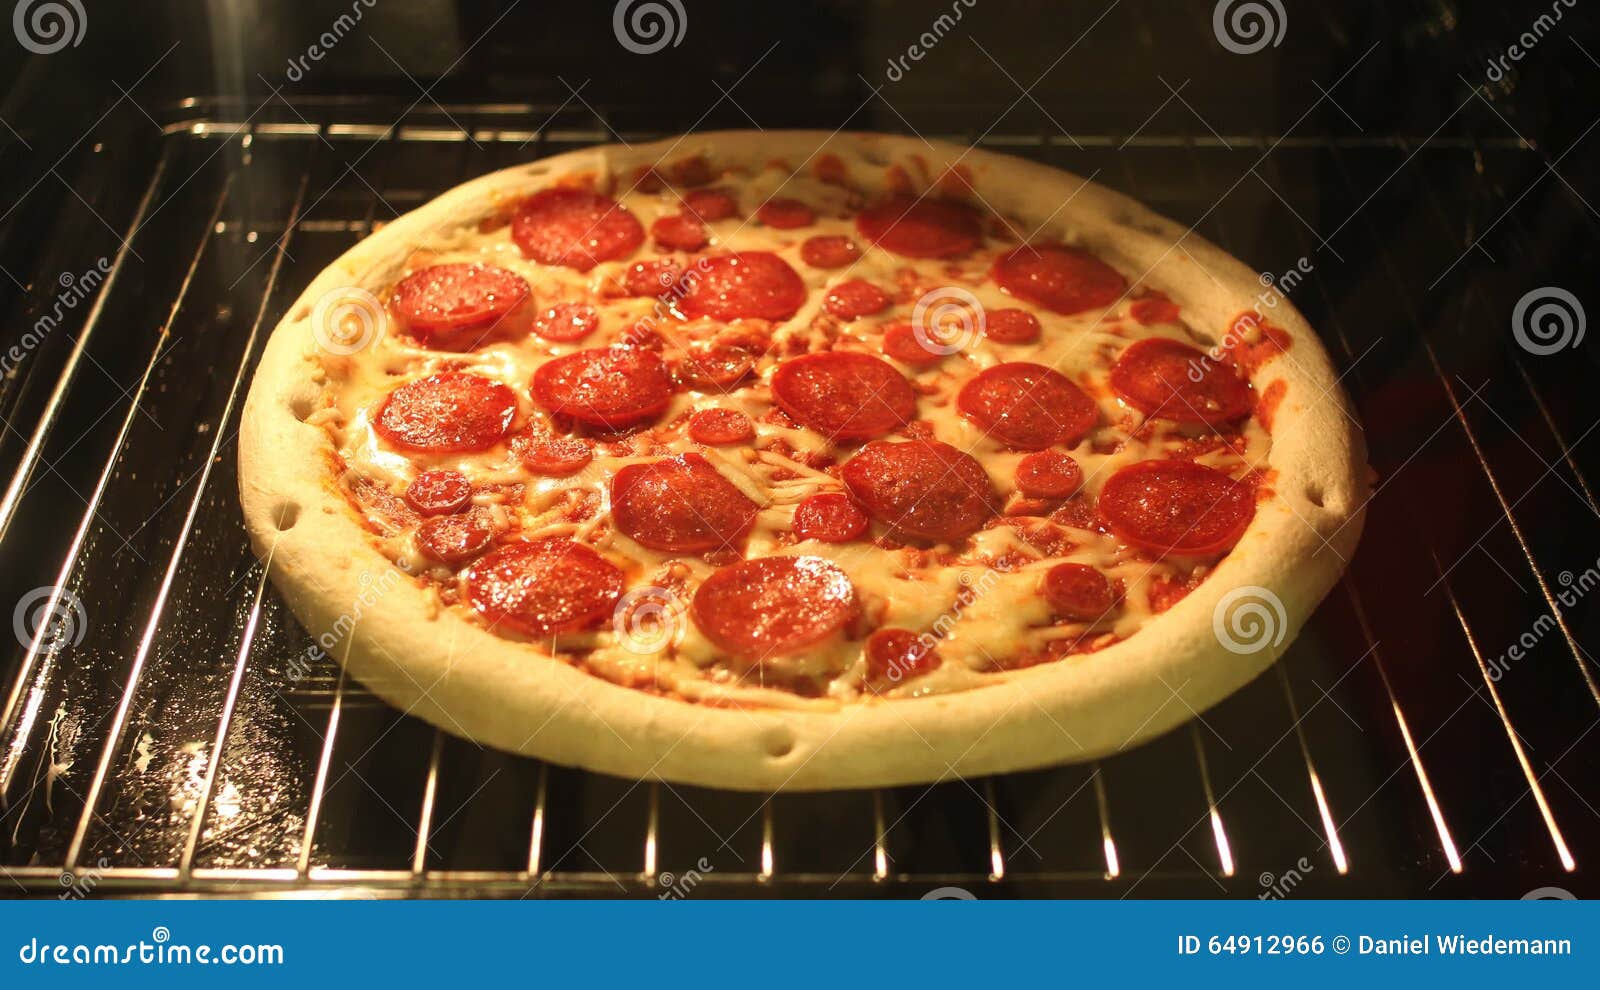 как подогреть пиццу чтобы она не была сухой в духовке фото 114